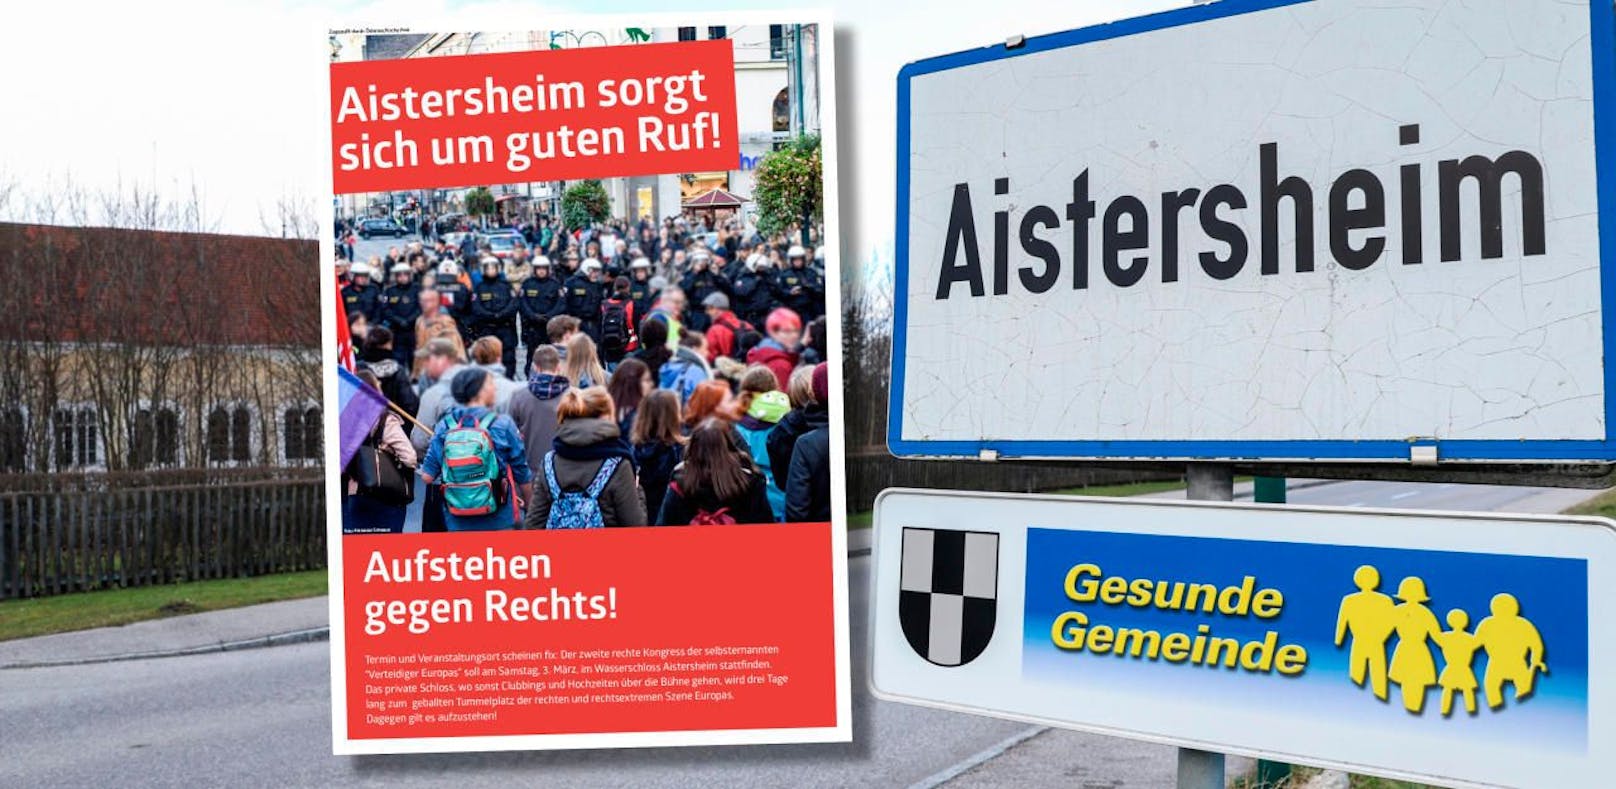 Aistersheim: SP-Flugblatt warnt vor Rechten-Treffen